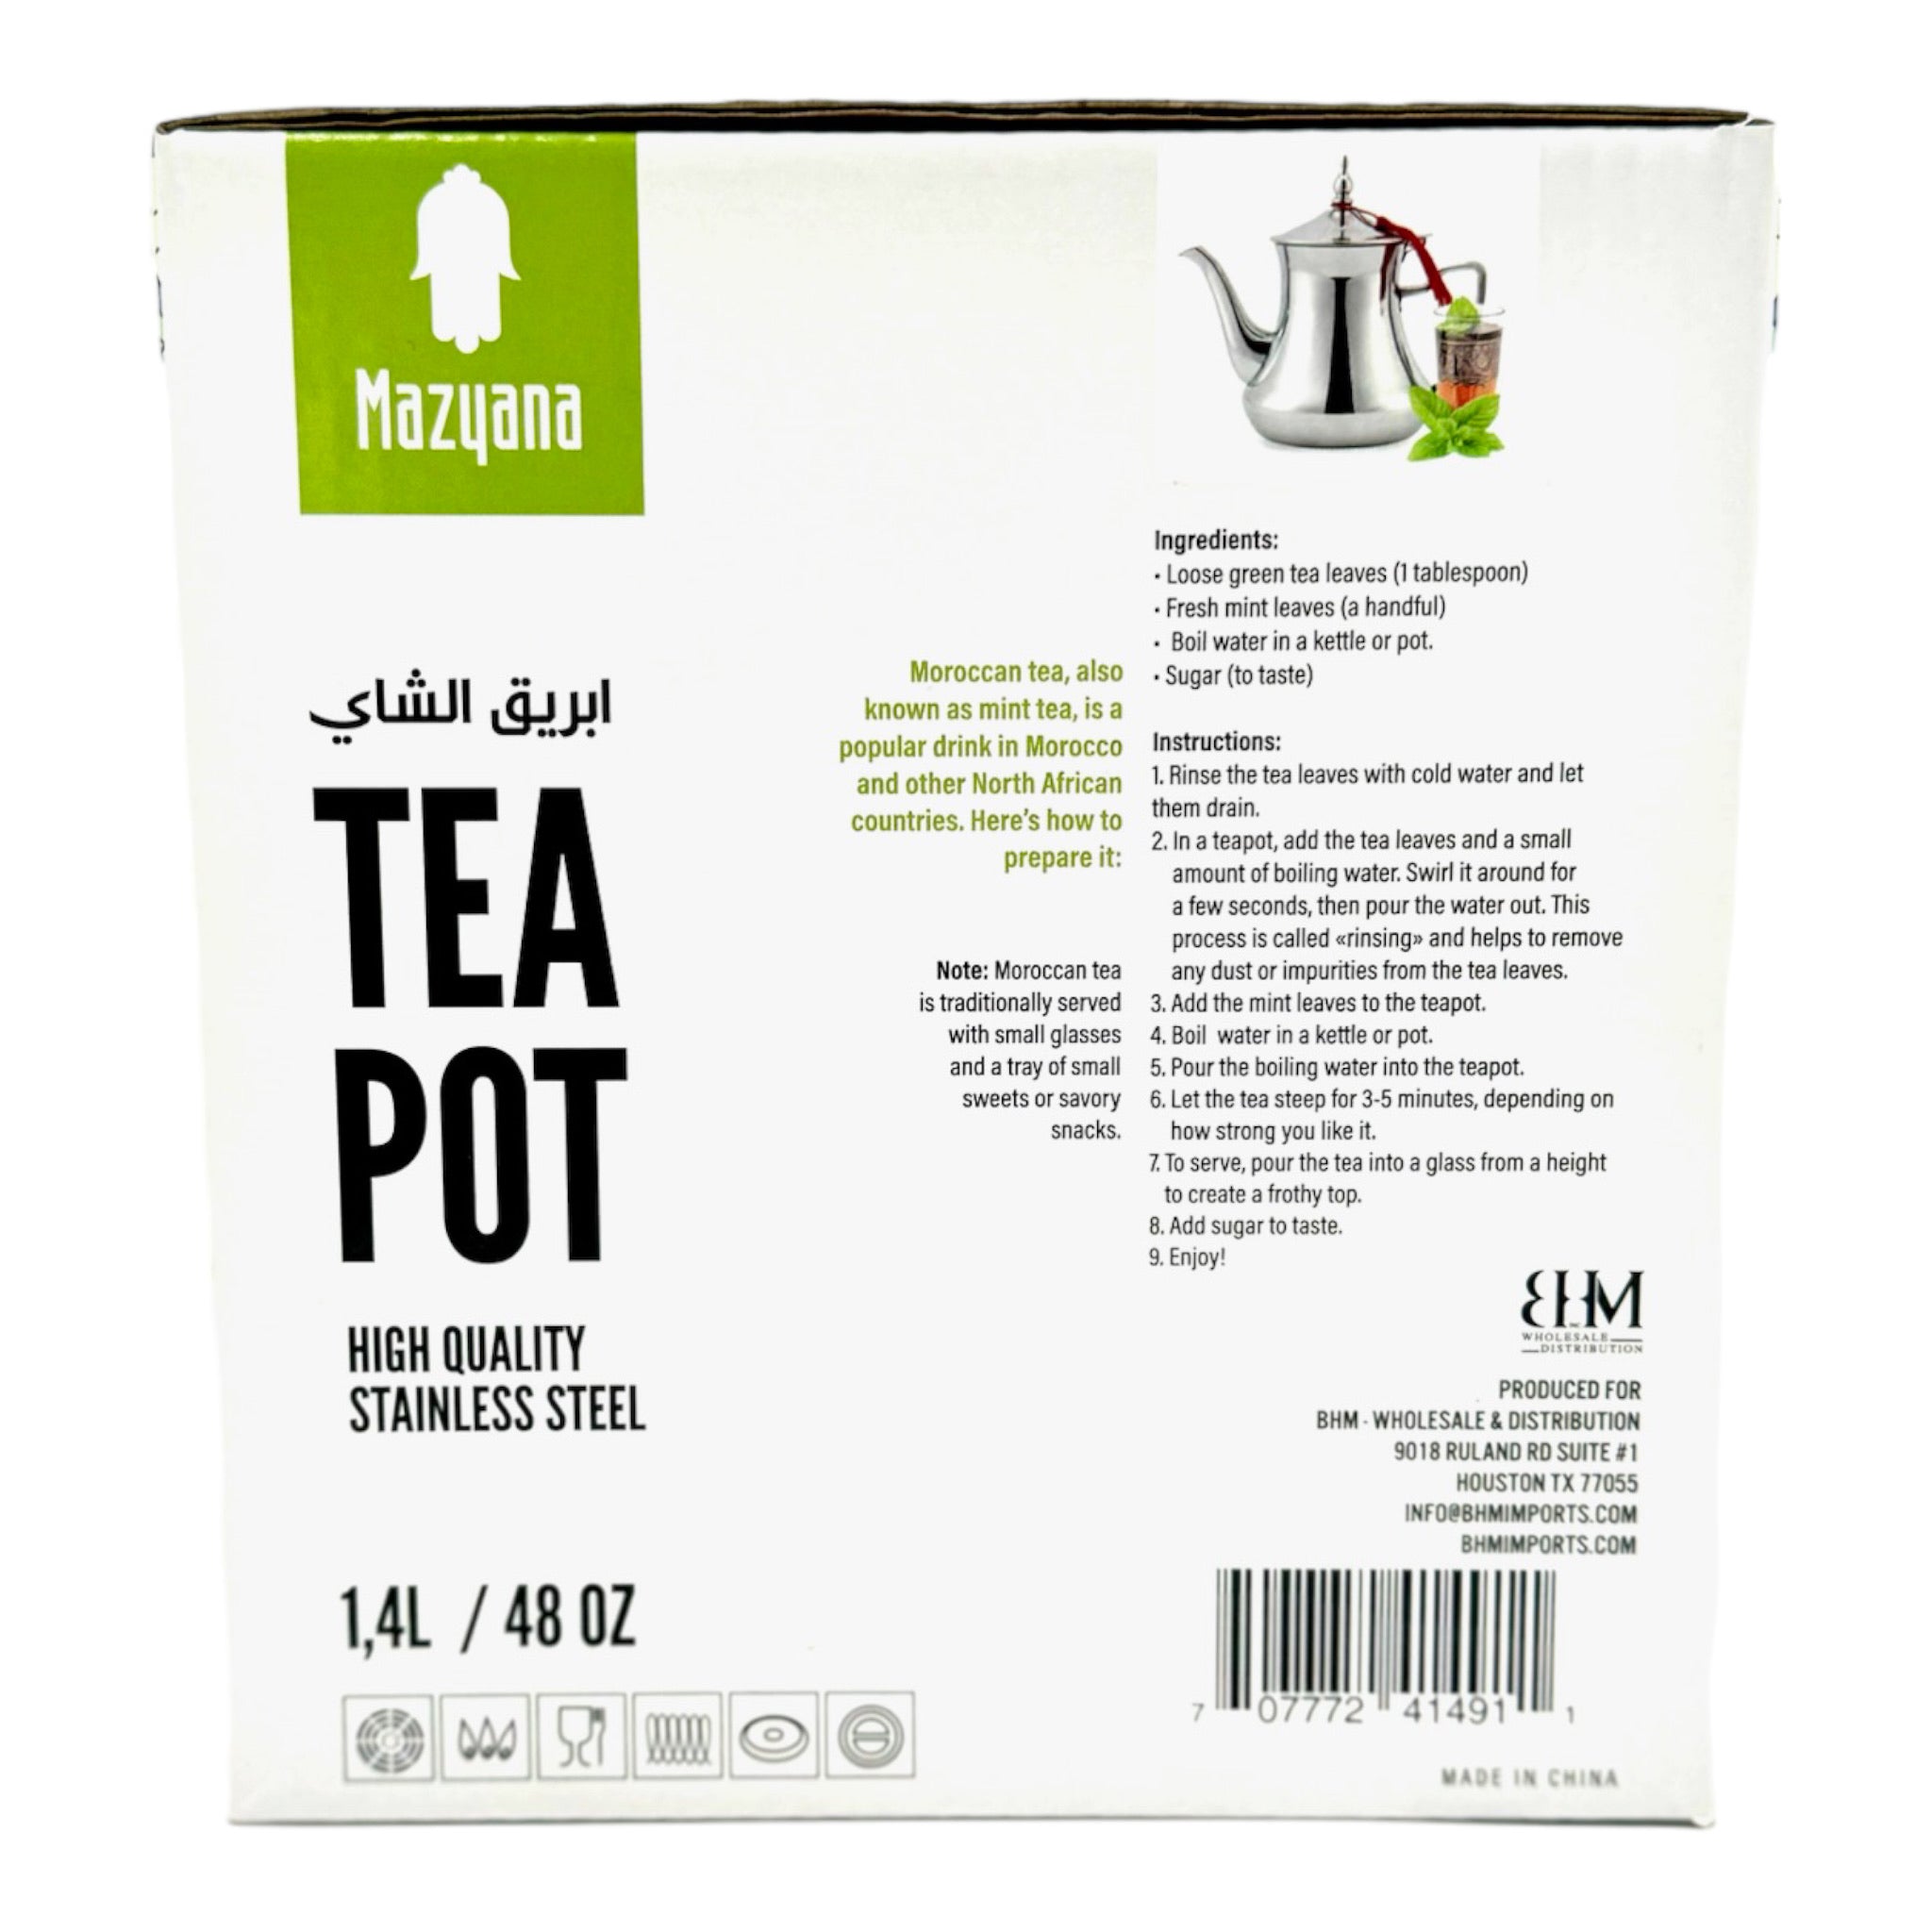 Moroccan Tea Pot by Mazyana Brand